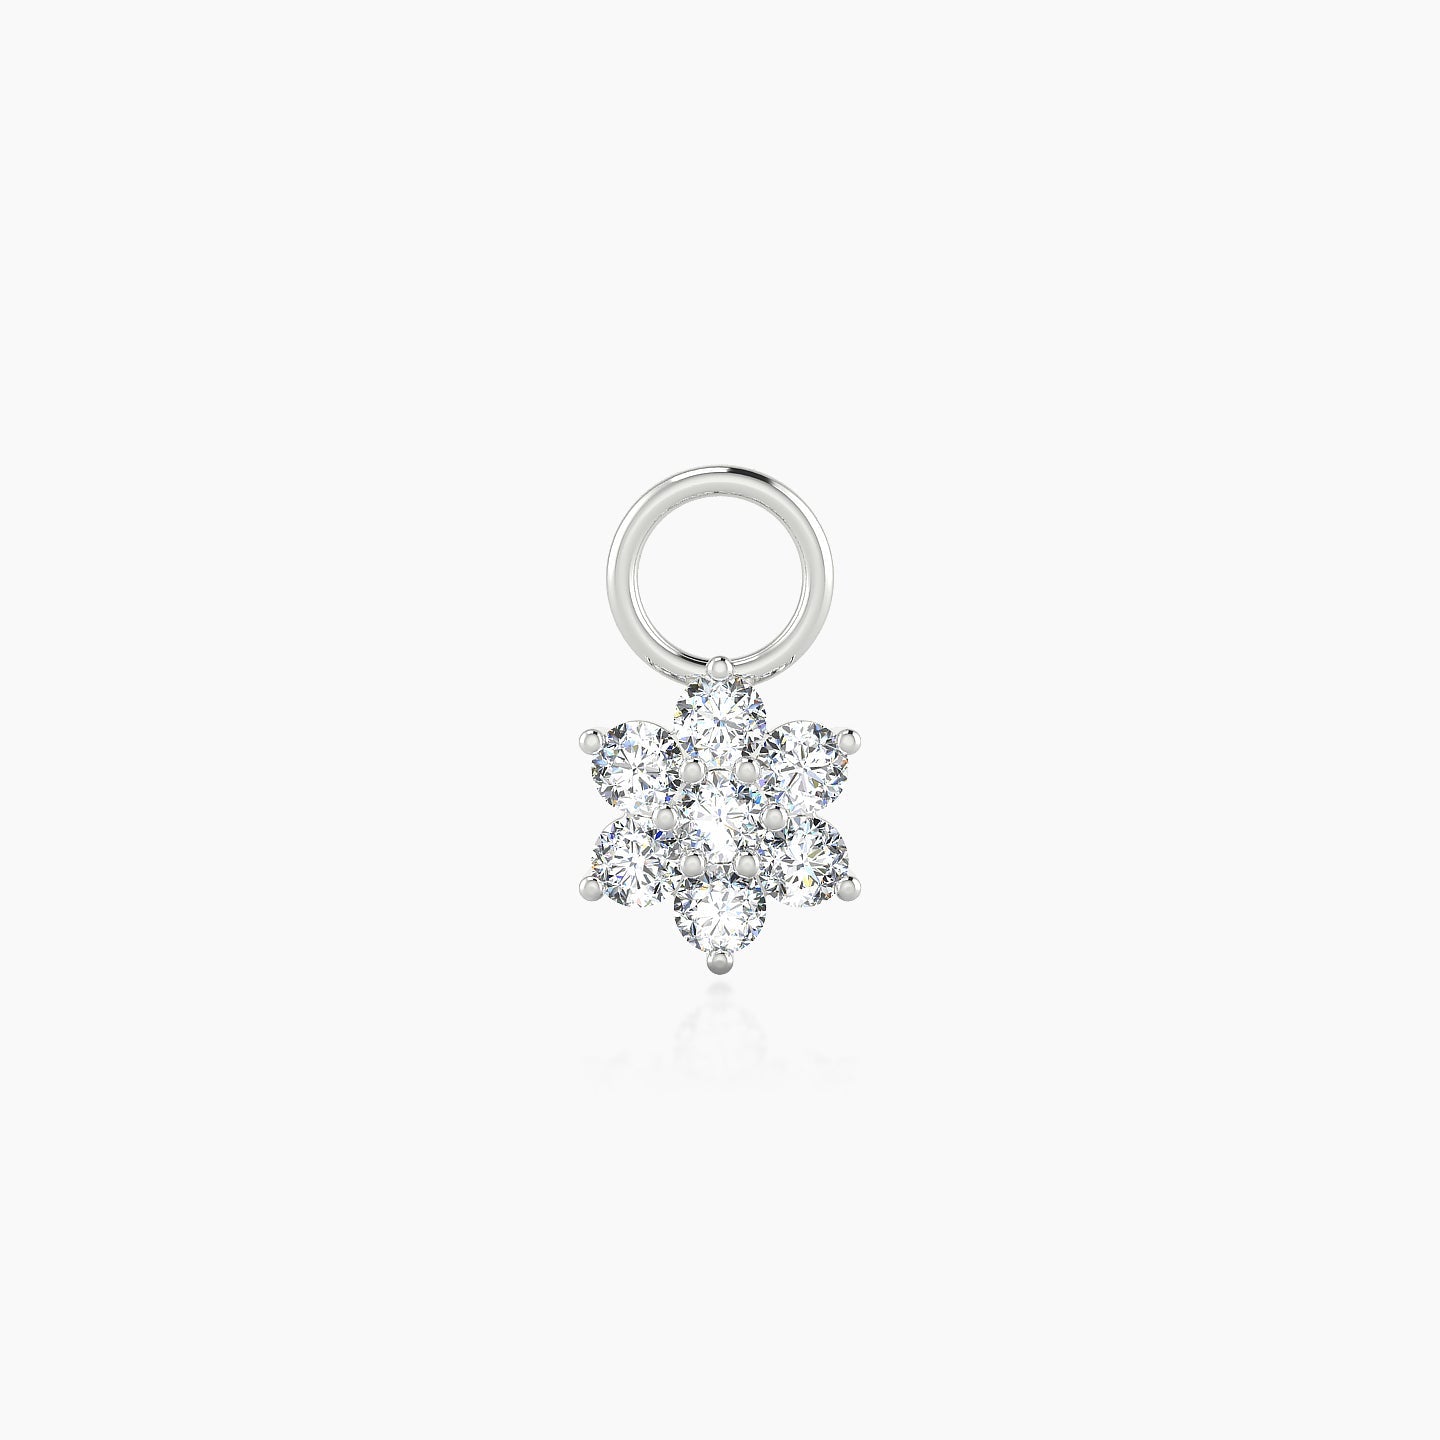 Chloris | 18k White Gold 6 mm Flower Diamond Charm